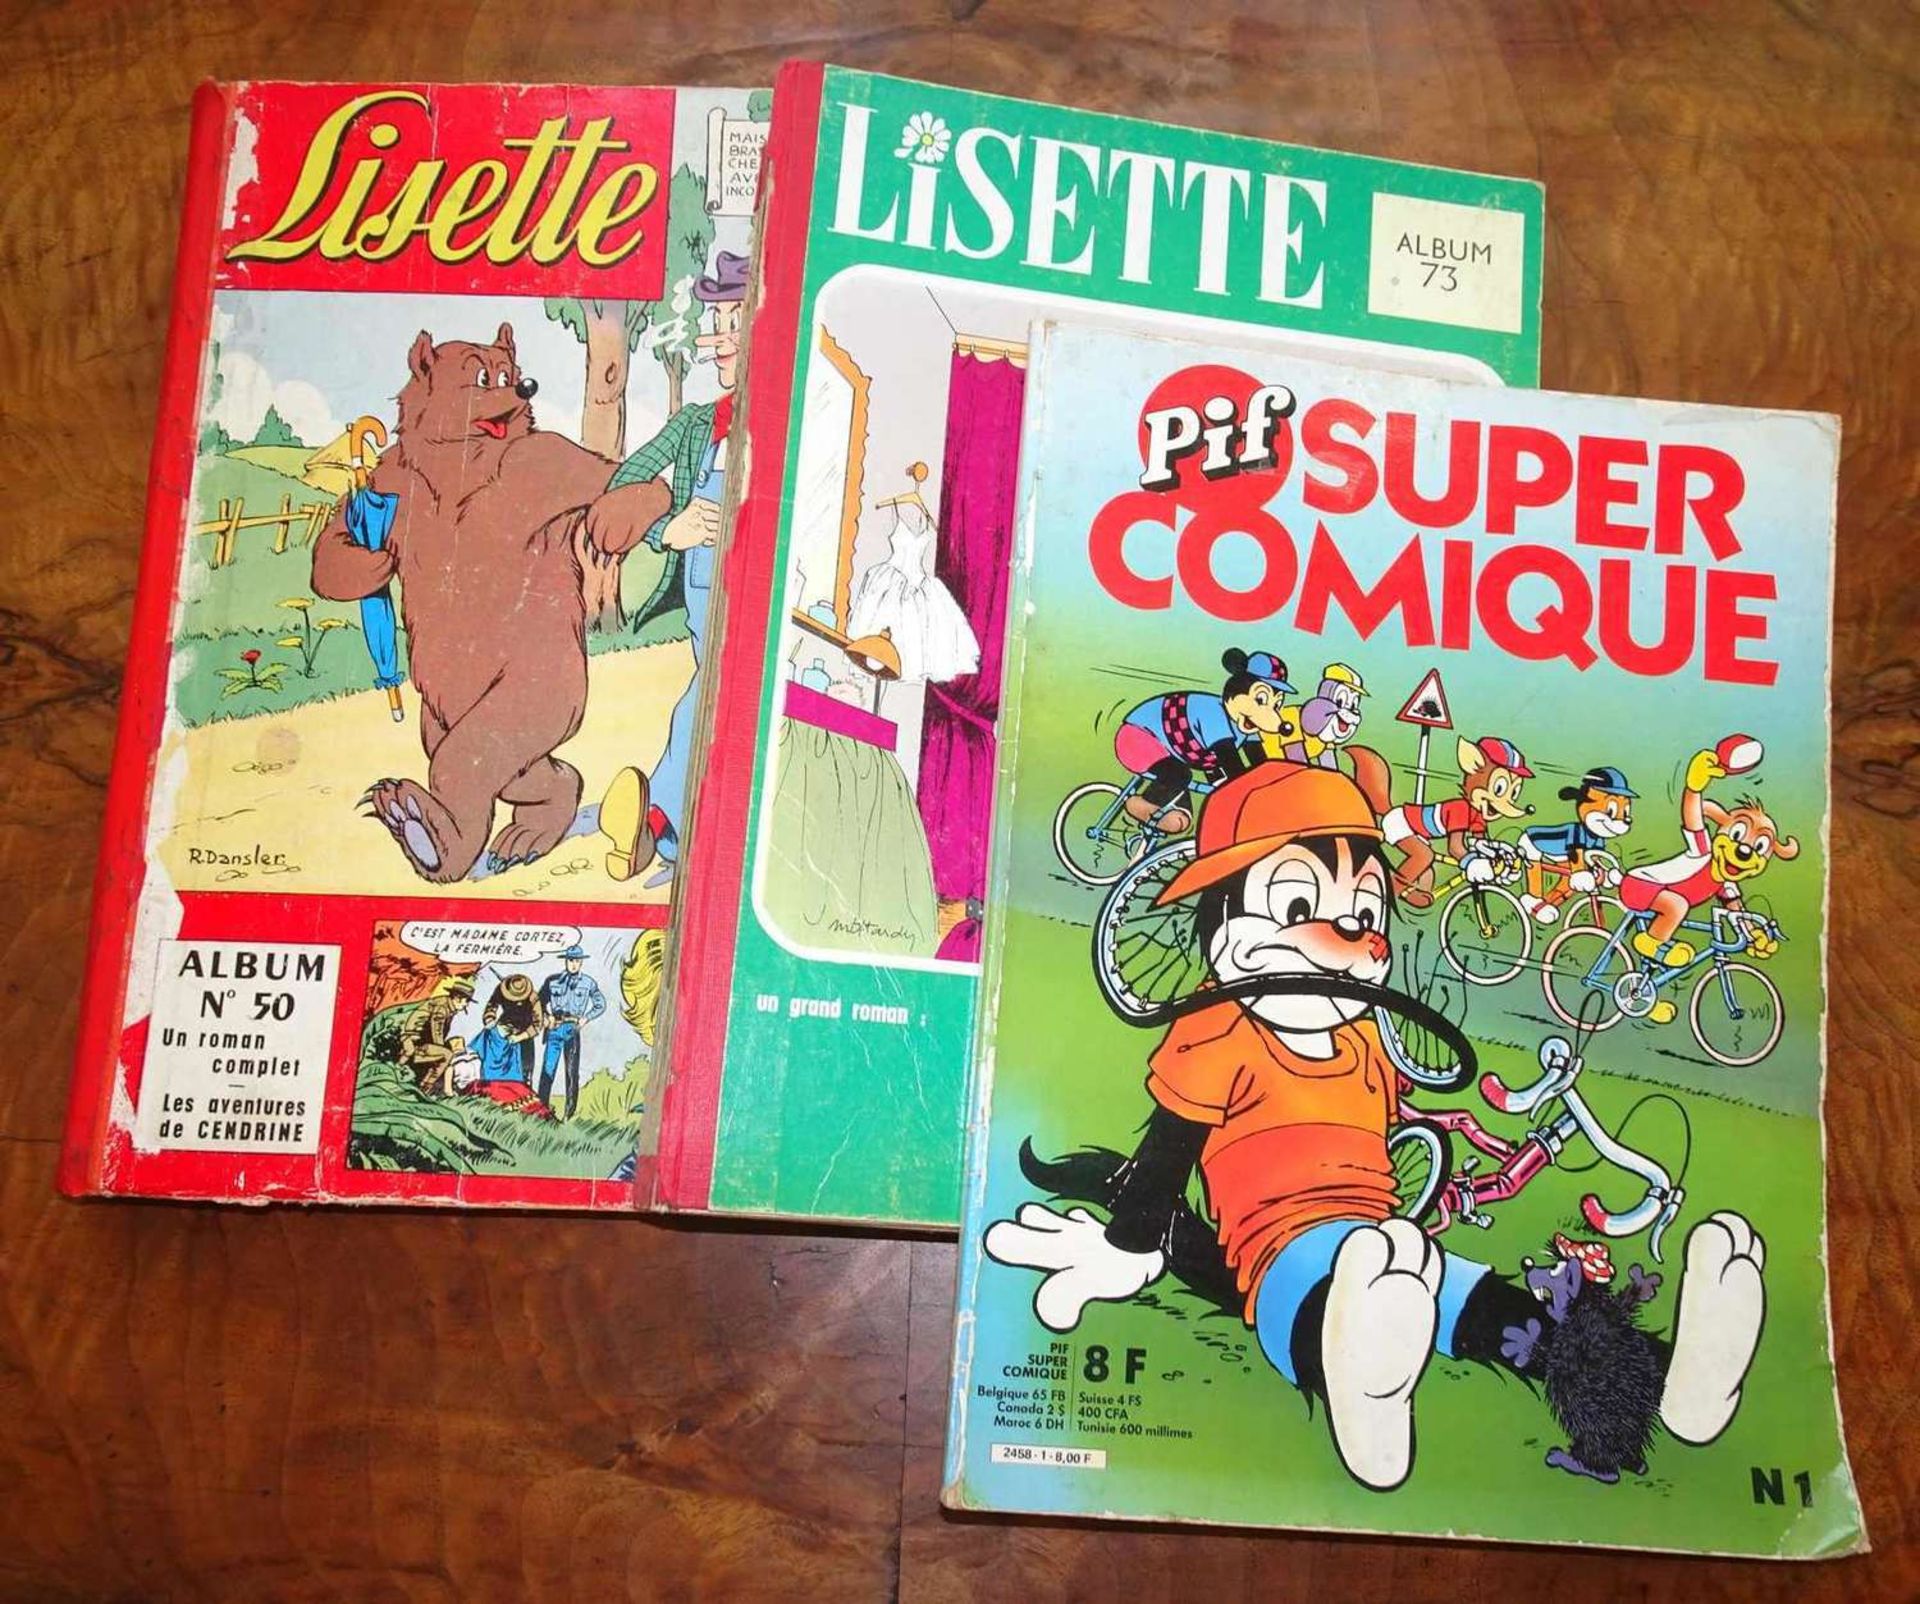 Lot französische Comics, dabei Pif Super Comique, Lisette Album 73 und Album 50. Stark gebrauchter